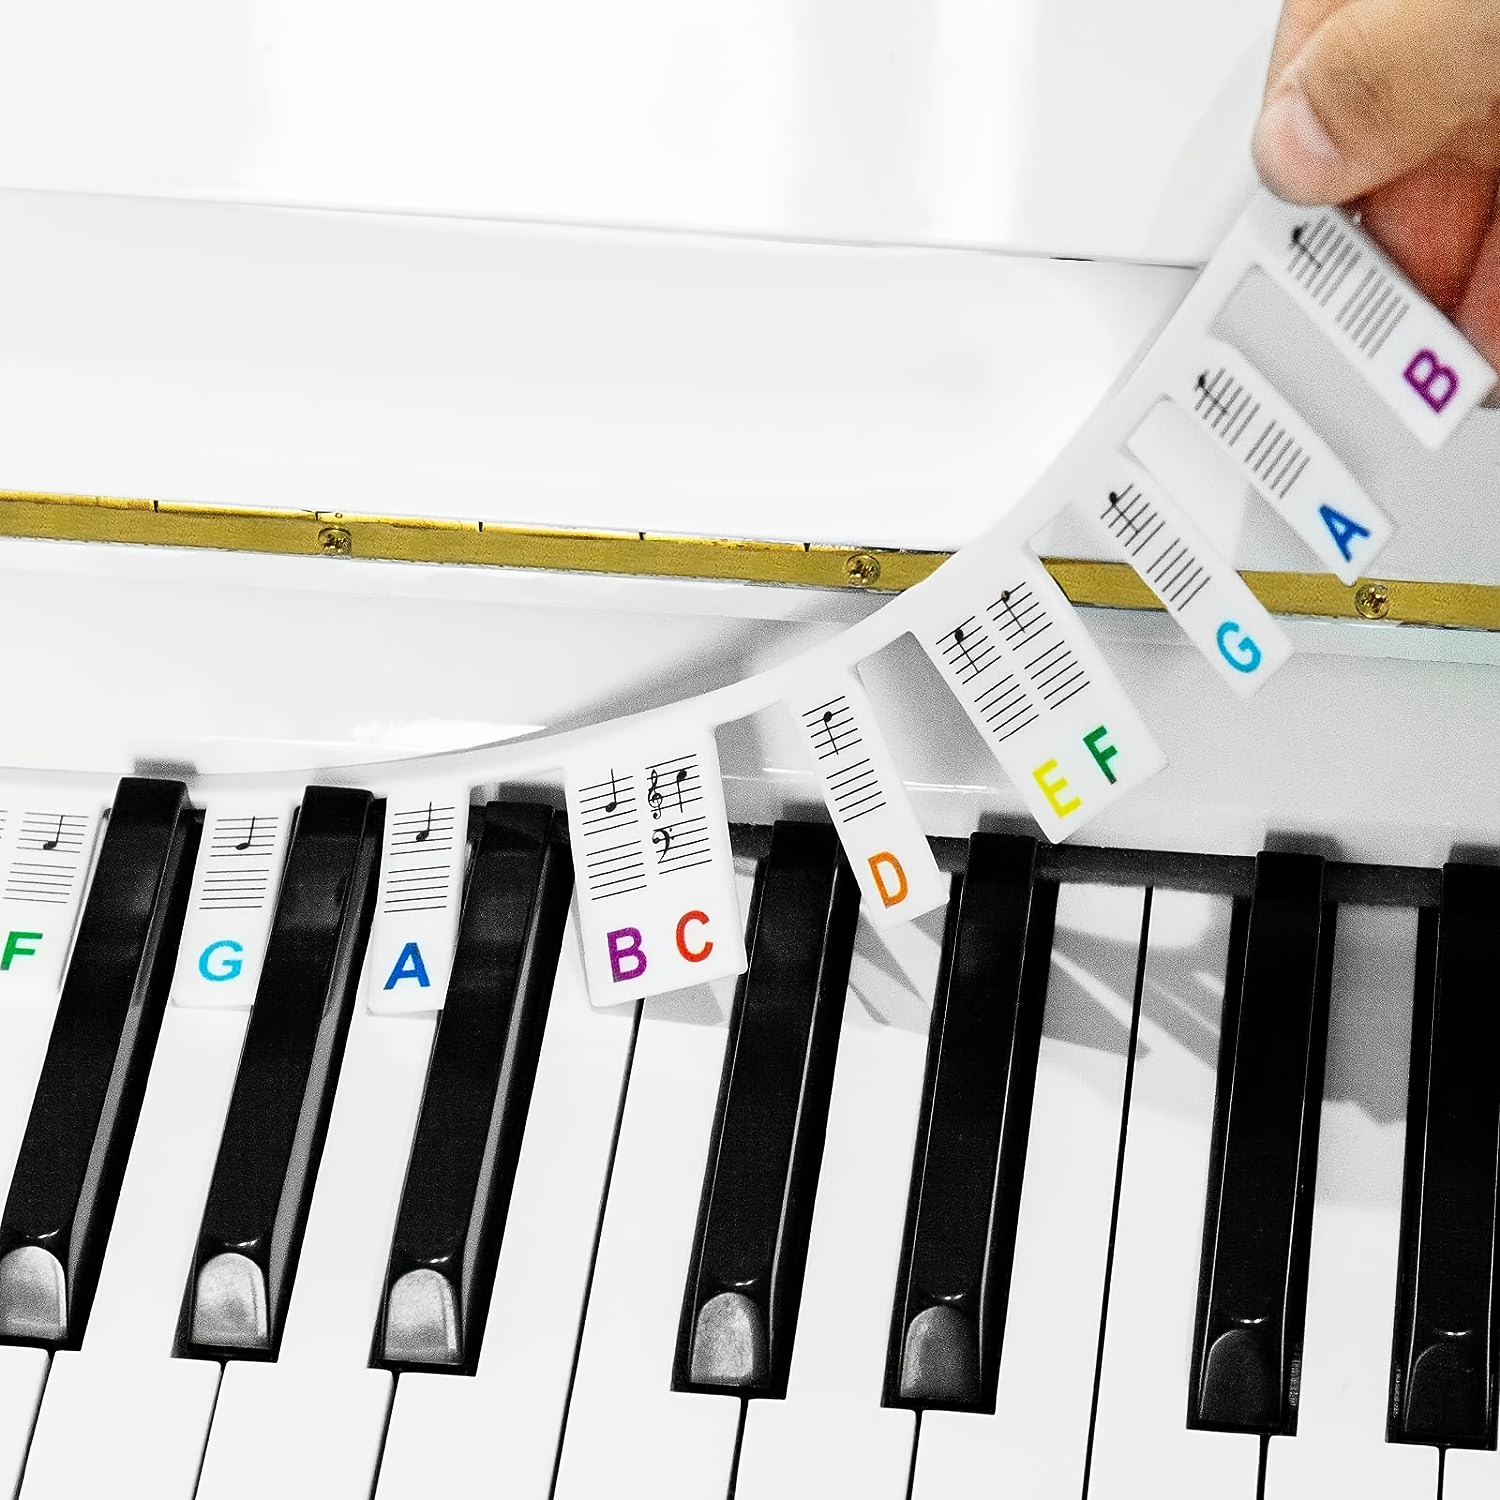 Autocollants de Piano, Autocollants Clavier Piano Pleine Grandeur 88  Touches en Silicone pas Besoin de Coller Étiquettes Colorées Réutilisables  et